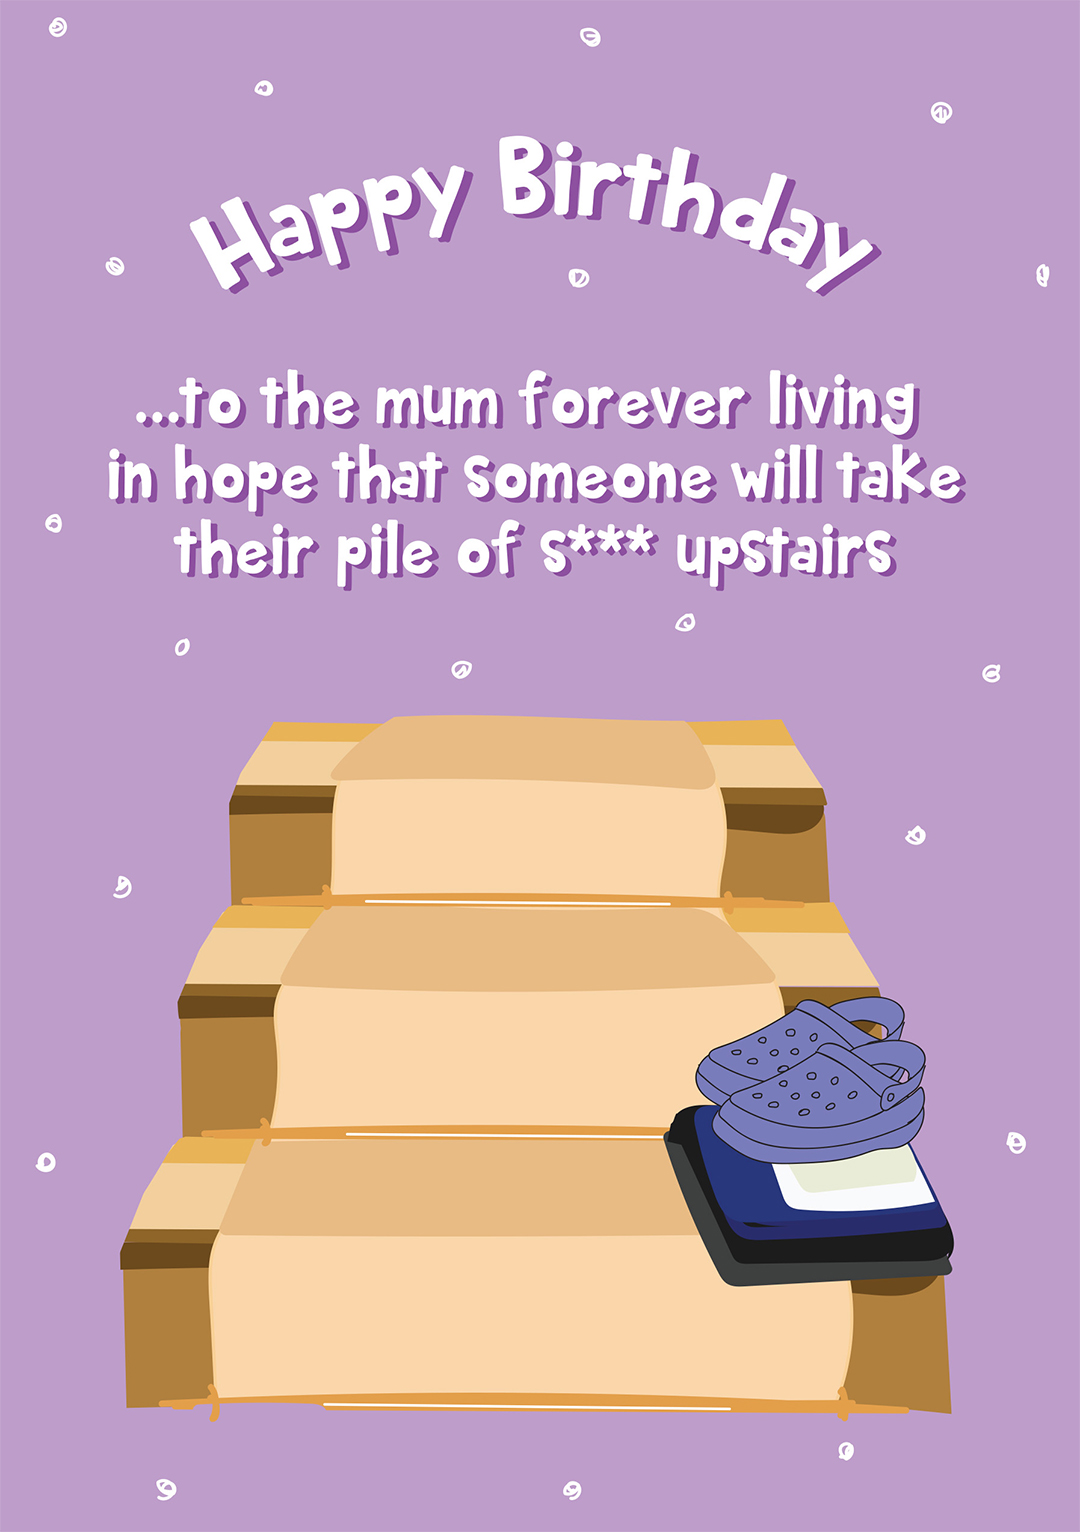 Happy Birthday Mum - Pile Of Shite On The Stairs